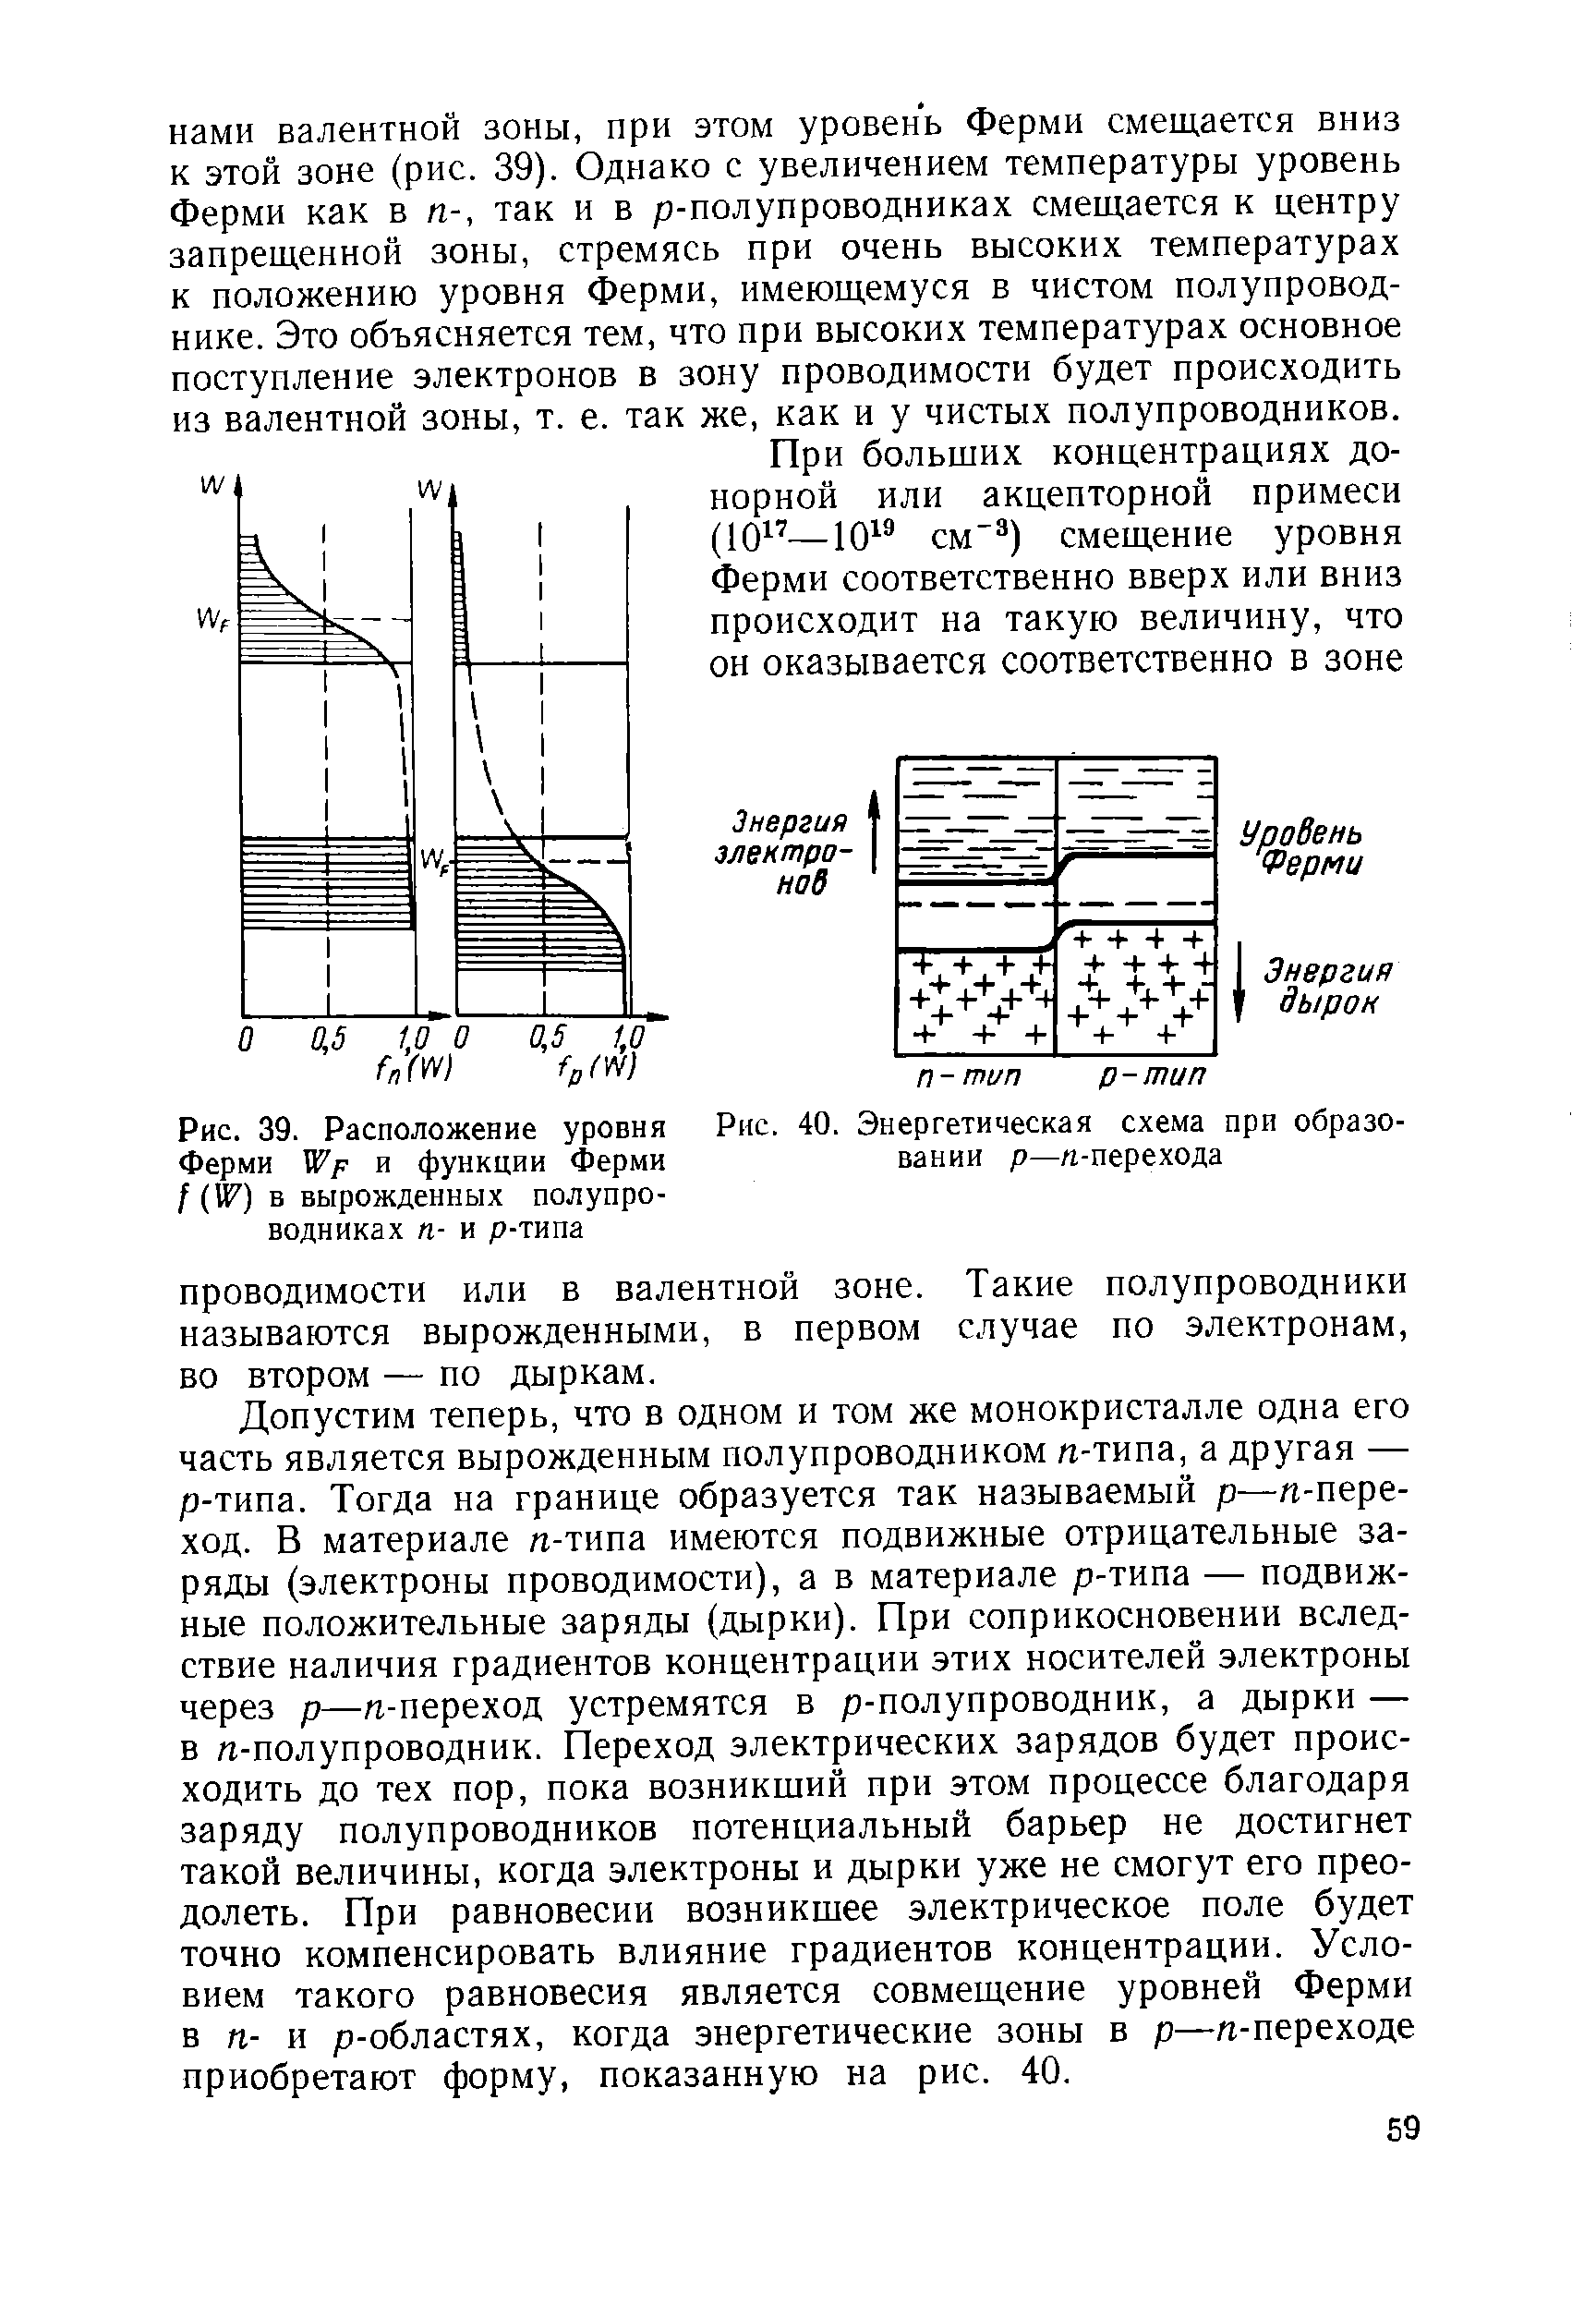 Рис. 39. Расположение уровня Ферми Wp и функции Ферми f (U7) Б вырожденных полупроводниках п- и р-типа
